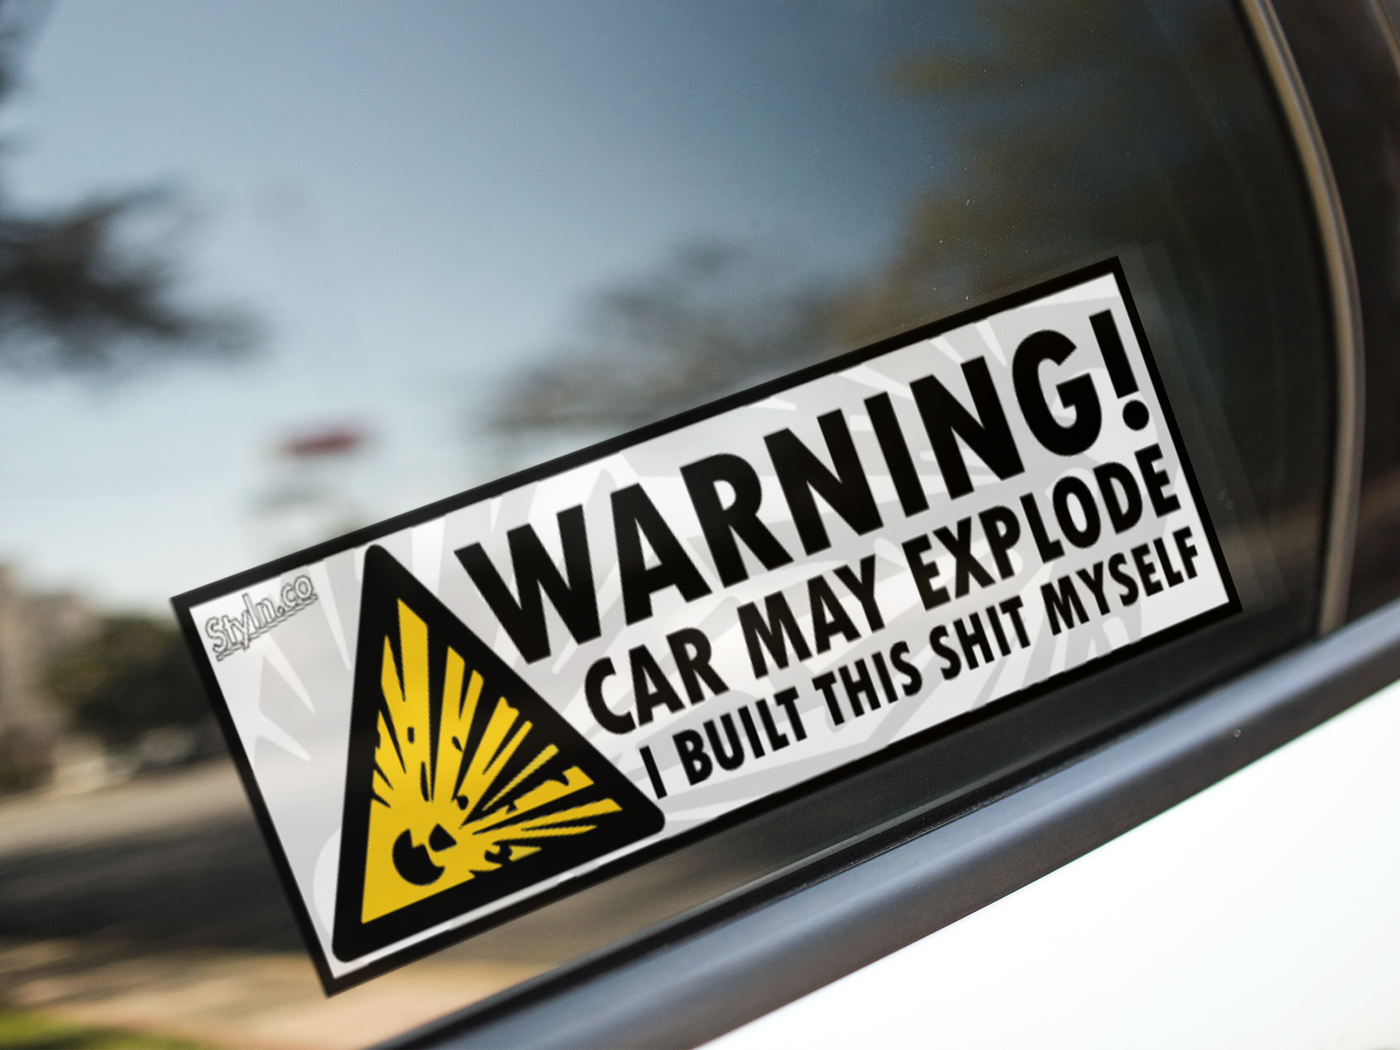 SLAP WARNING CAR MAY EXPLODE